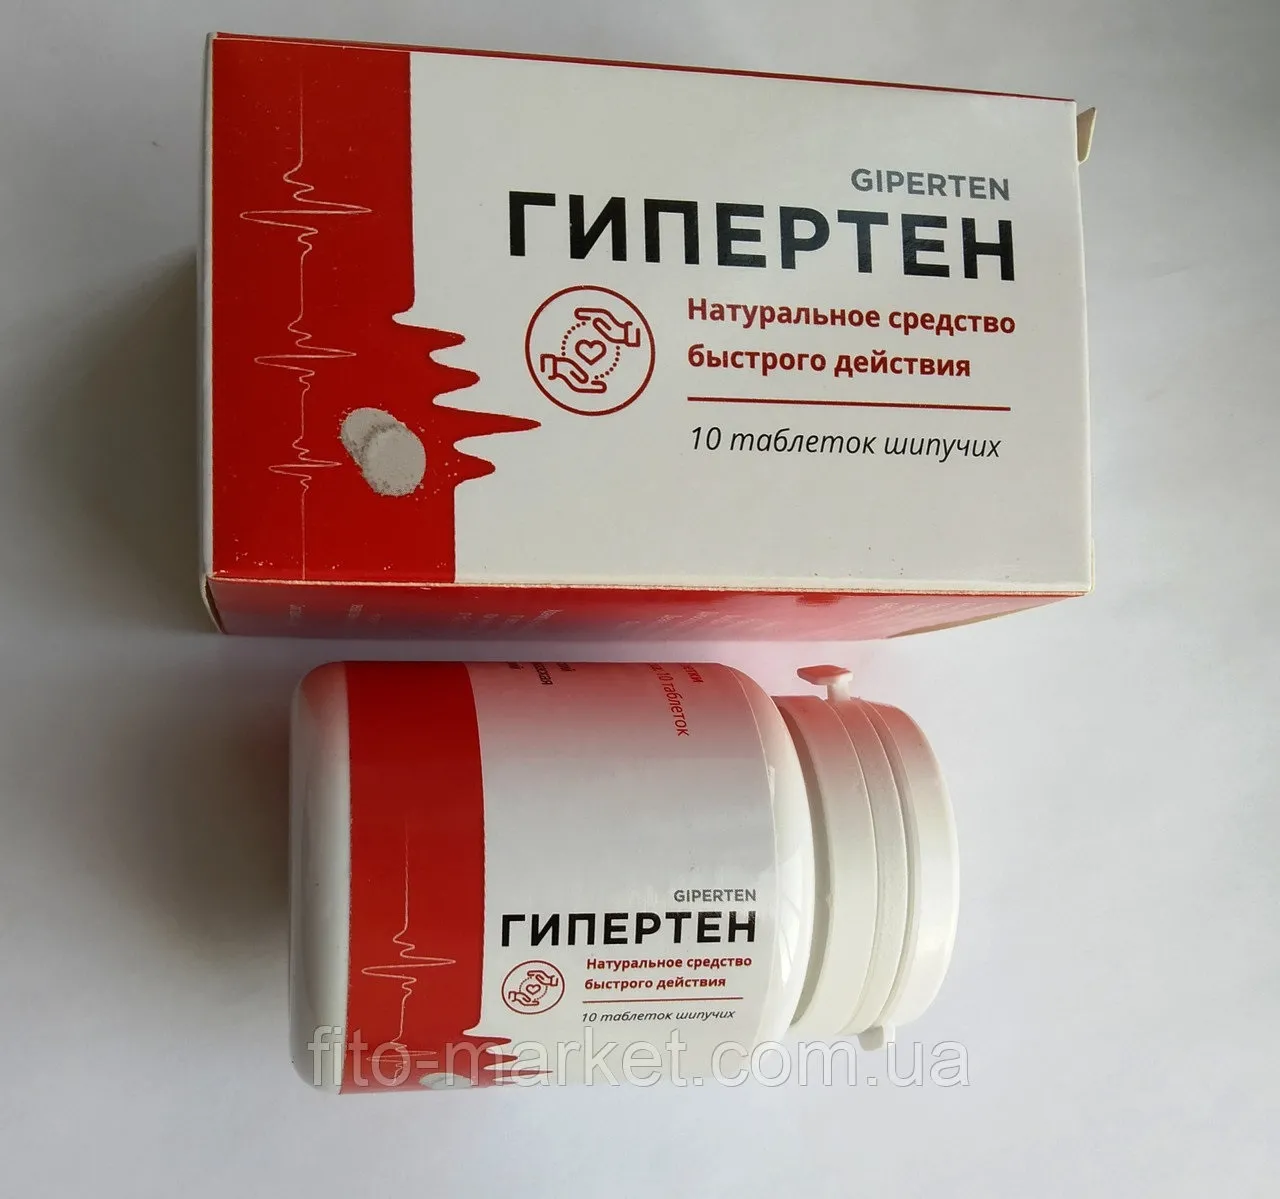 Hyper caps къде да купя - коментари - България - цена - мнения - отзиви - производител - състав - в аптеките.